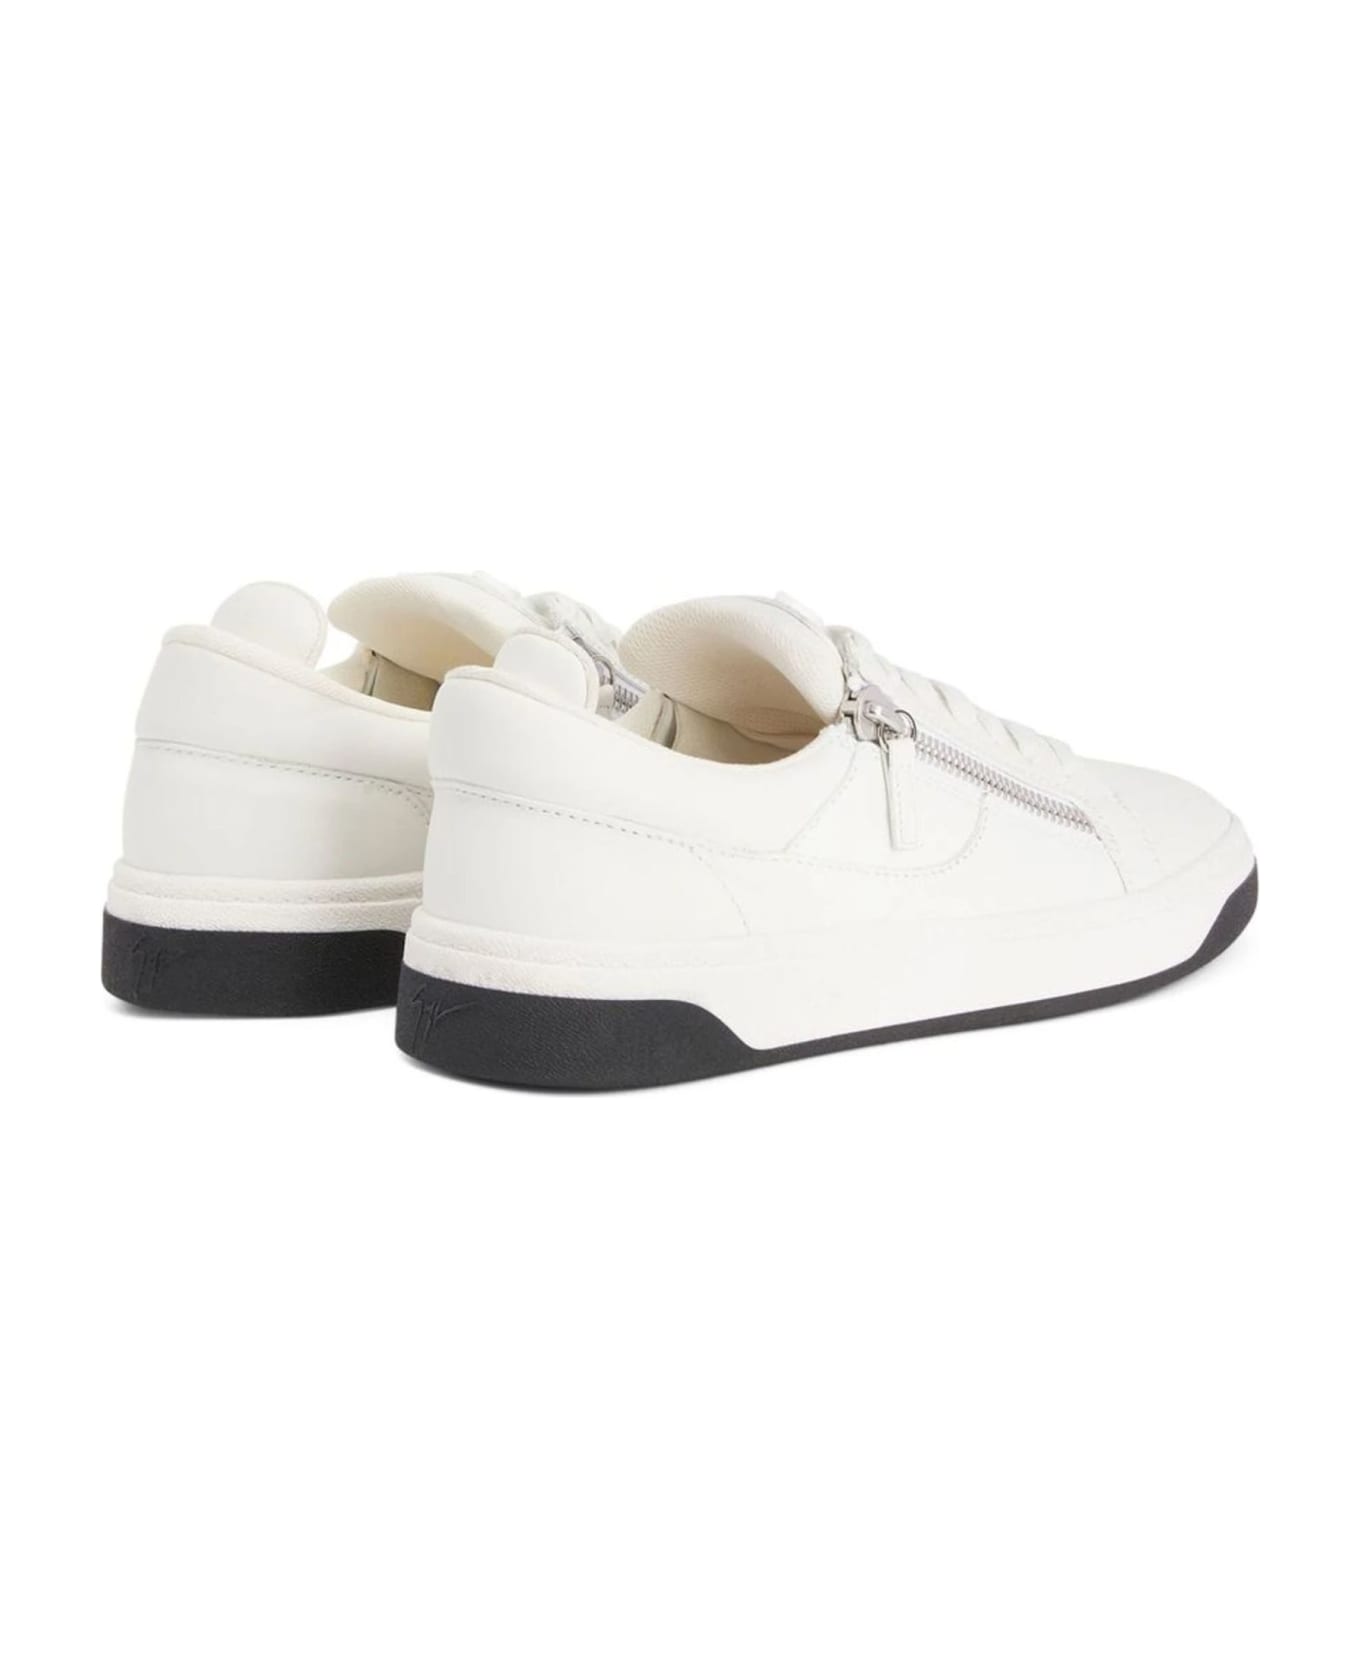 Giuseppe Zanotti White Leather Sneaker - White